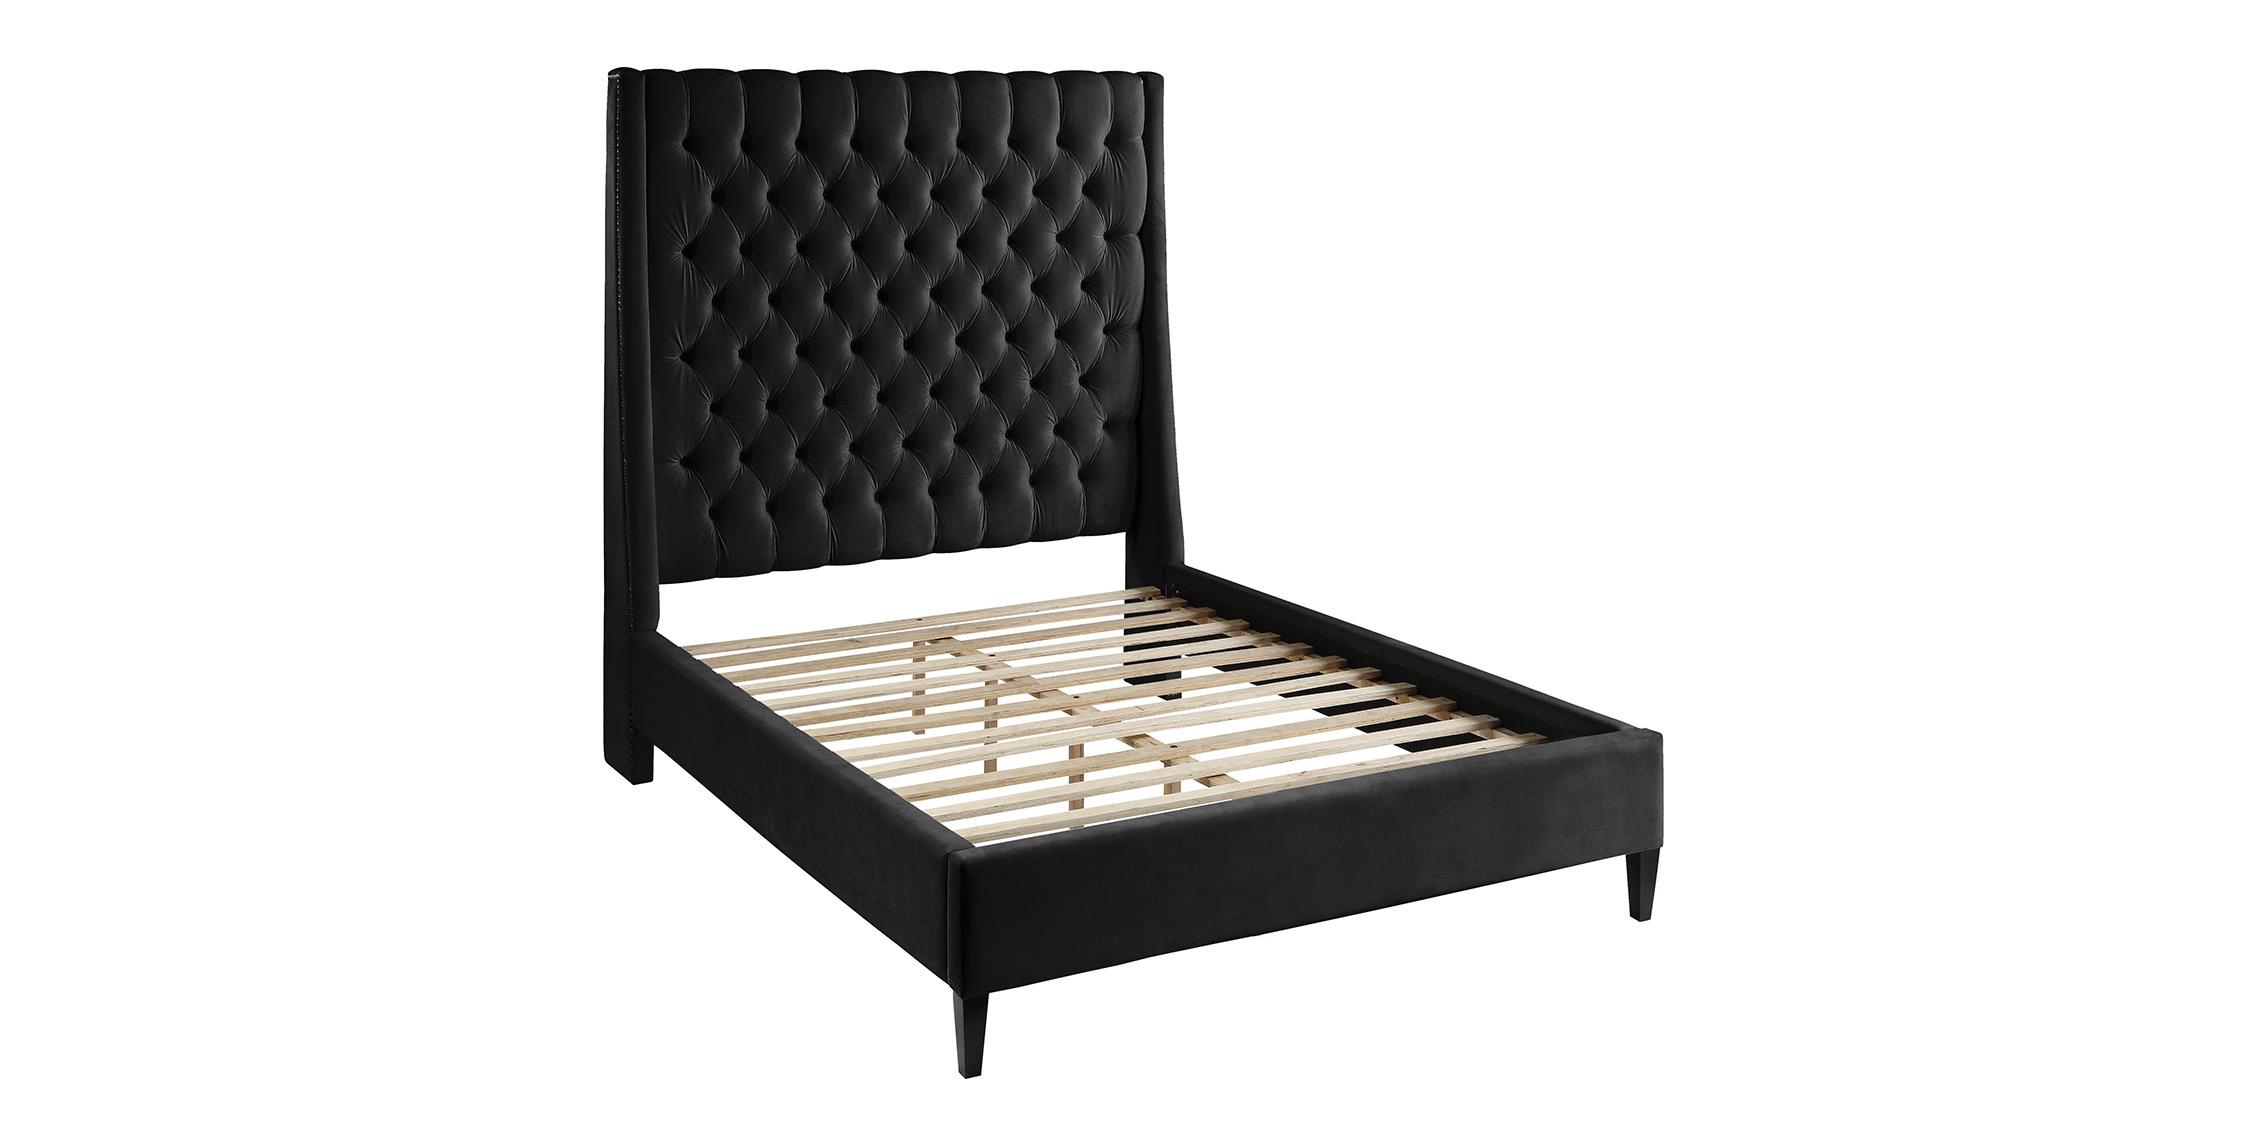 

    
FritzBlack-K Meridian Furniture Platform Bed
